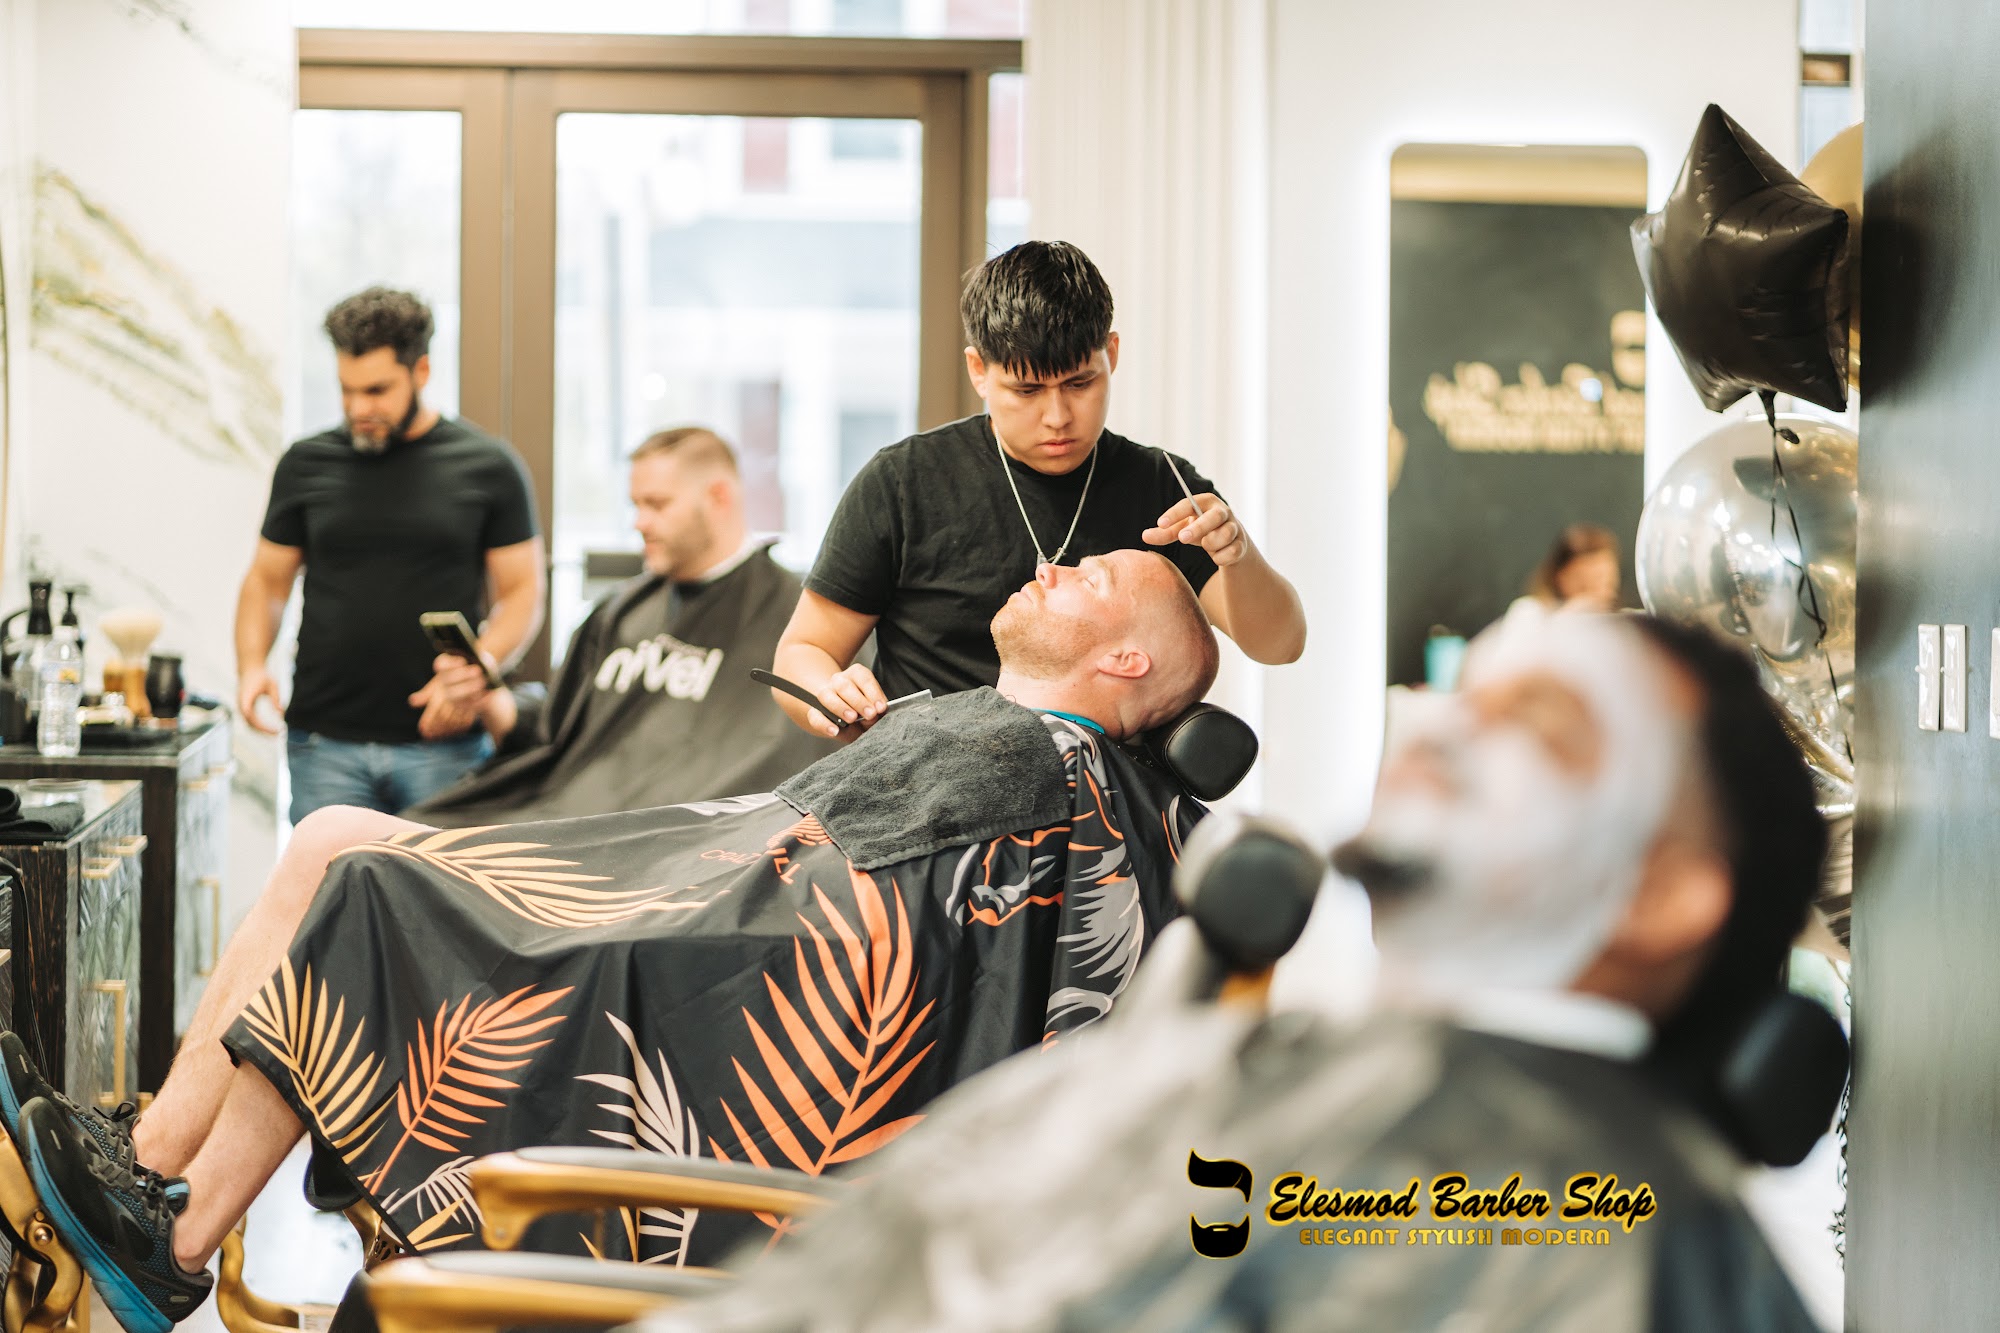 Elesmod Barber Shop